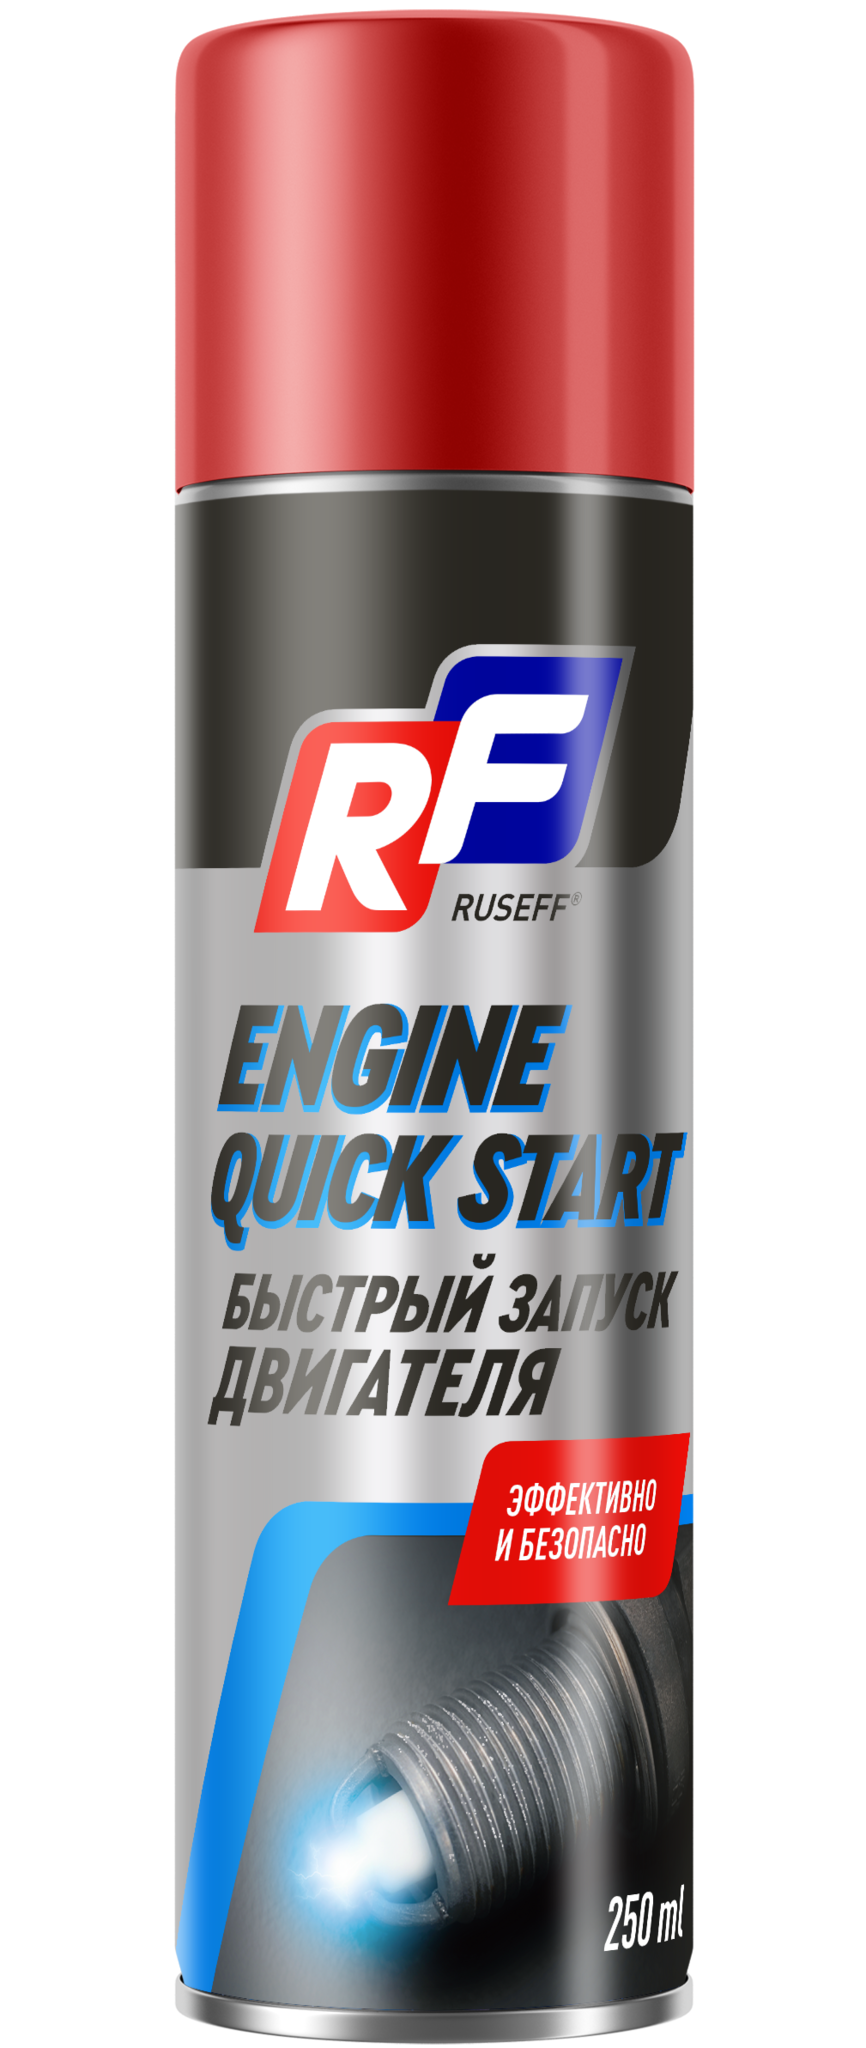 Ruseff Engine Quick Start Быстрый запуск двигателя